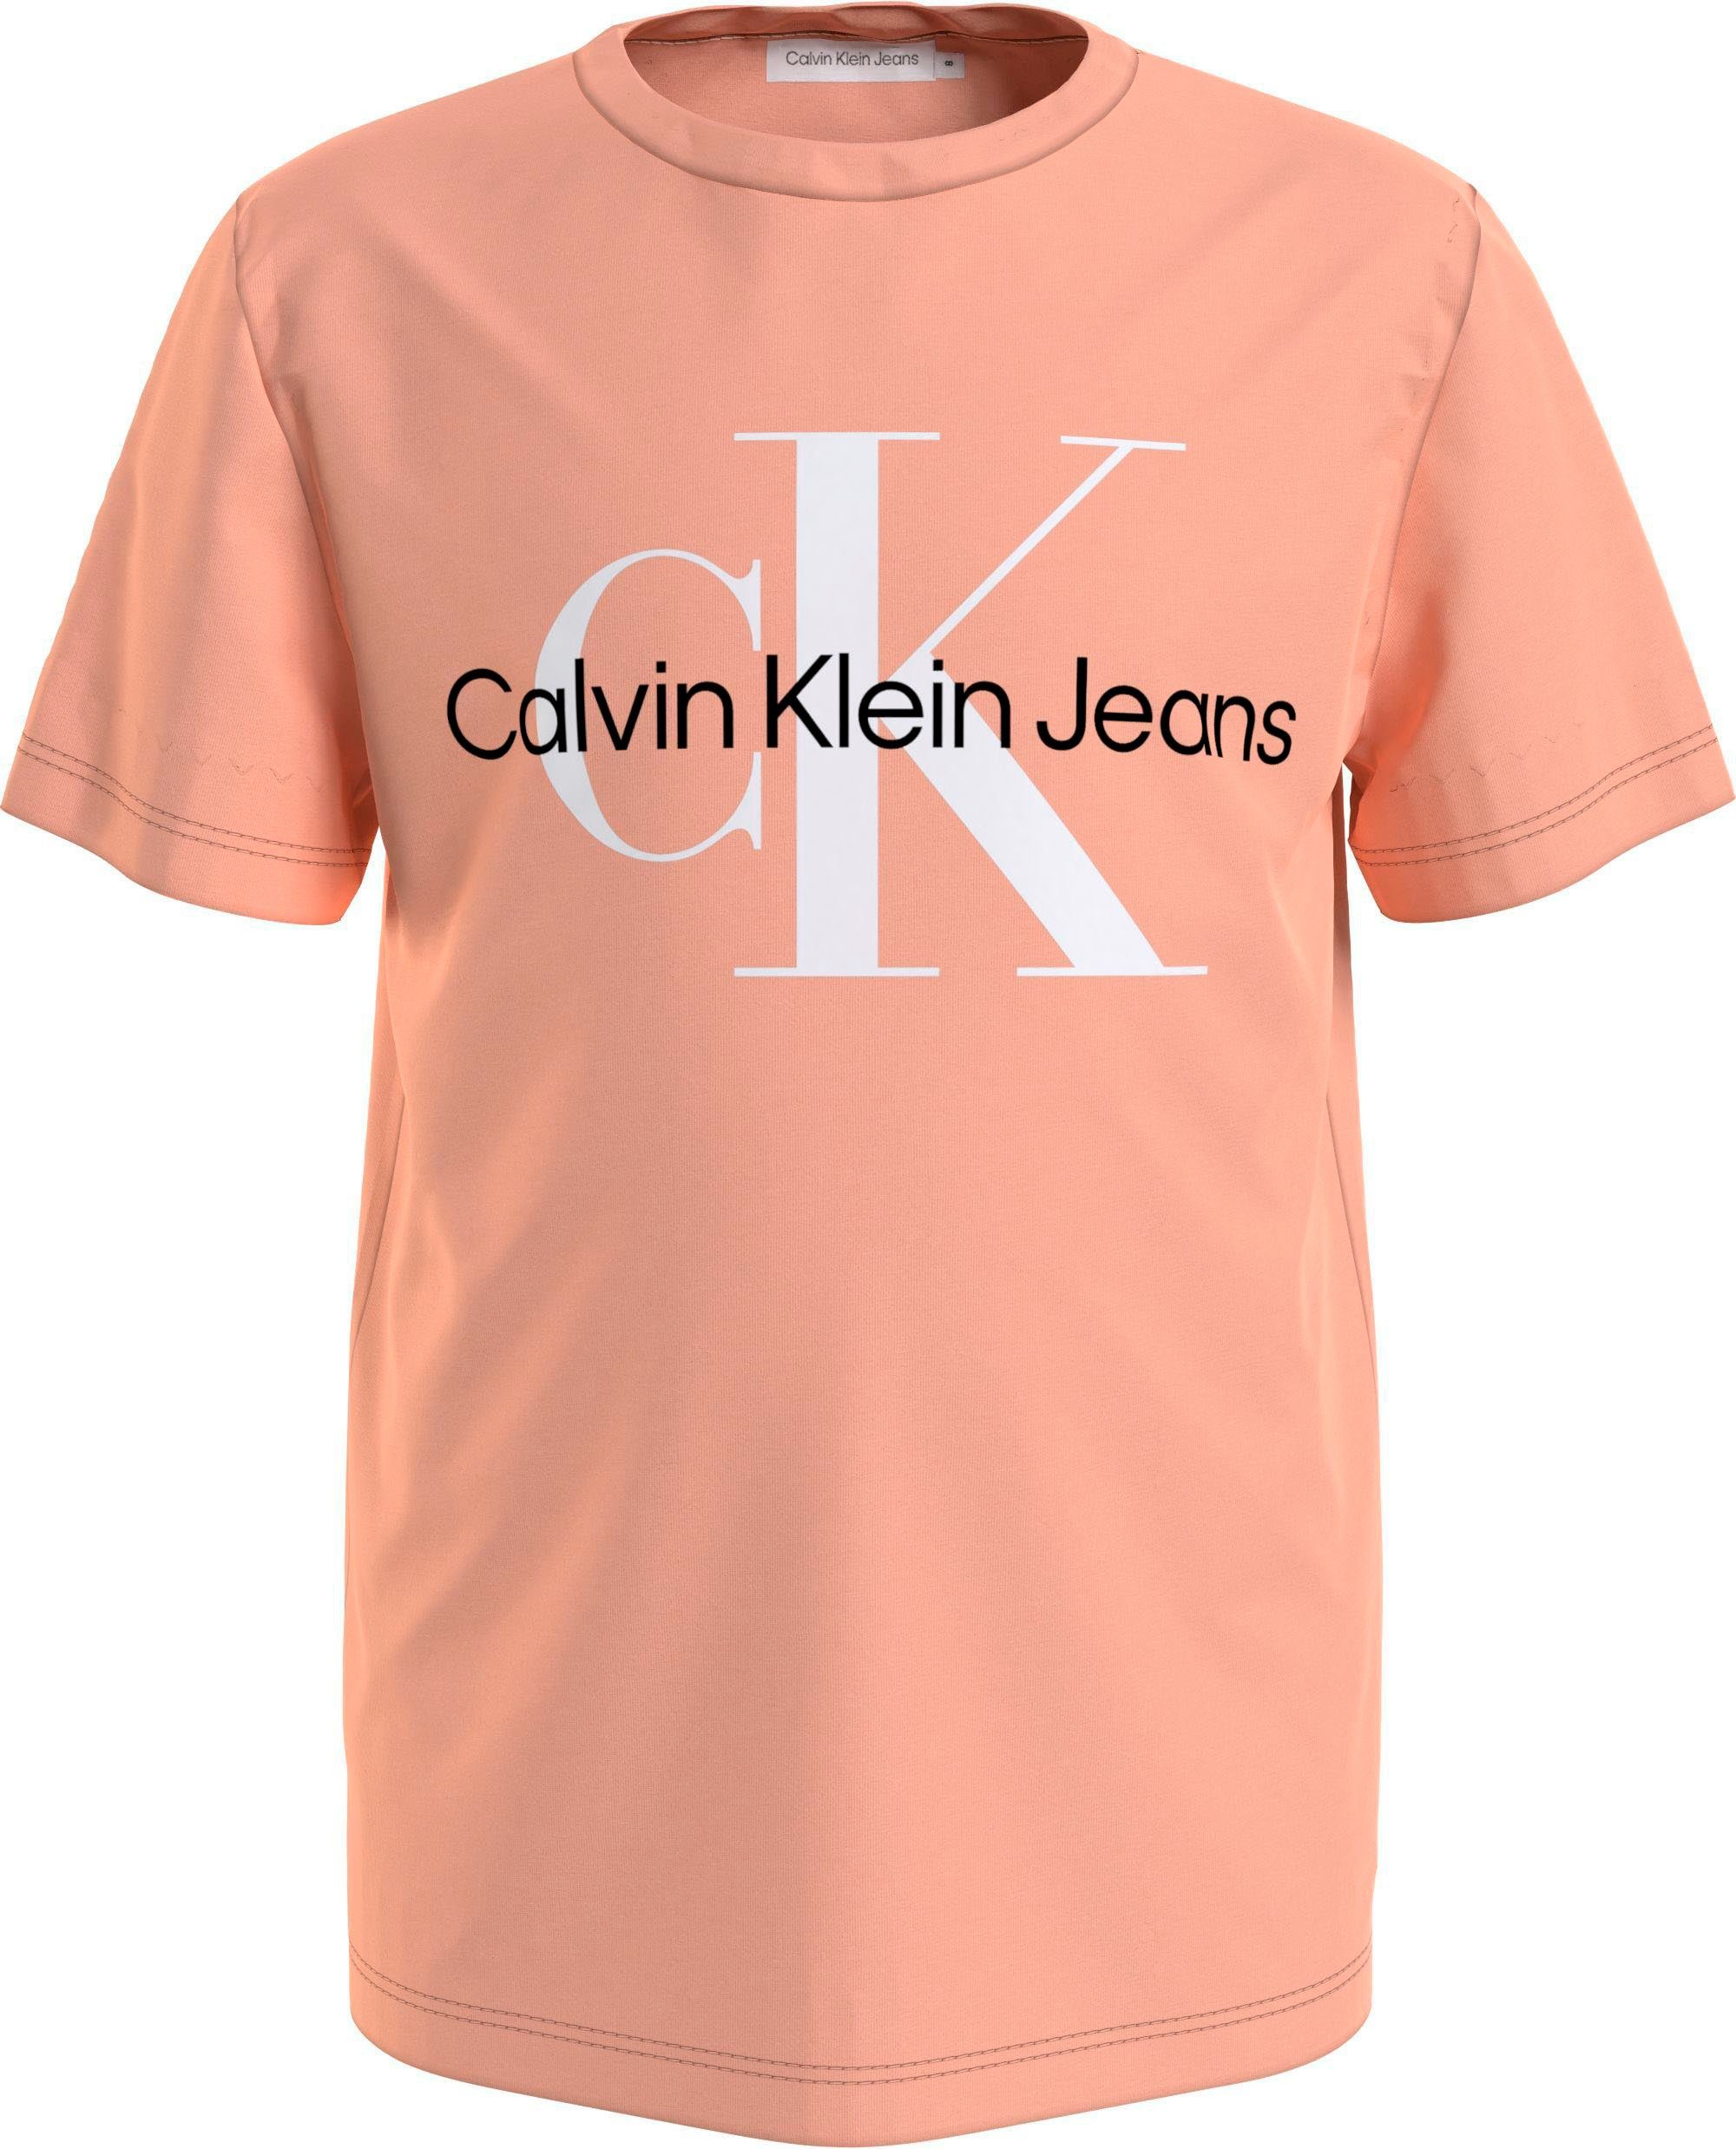 Junior T-SHIRT Mädchen Jungen MONOGRAM LOGO Kinder Calvin Kids Jeans T-Shirt hellorange MiniMe,für und Klein